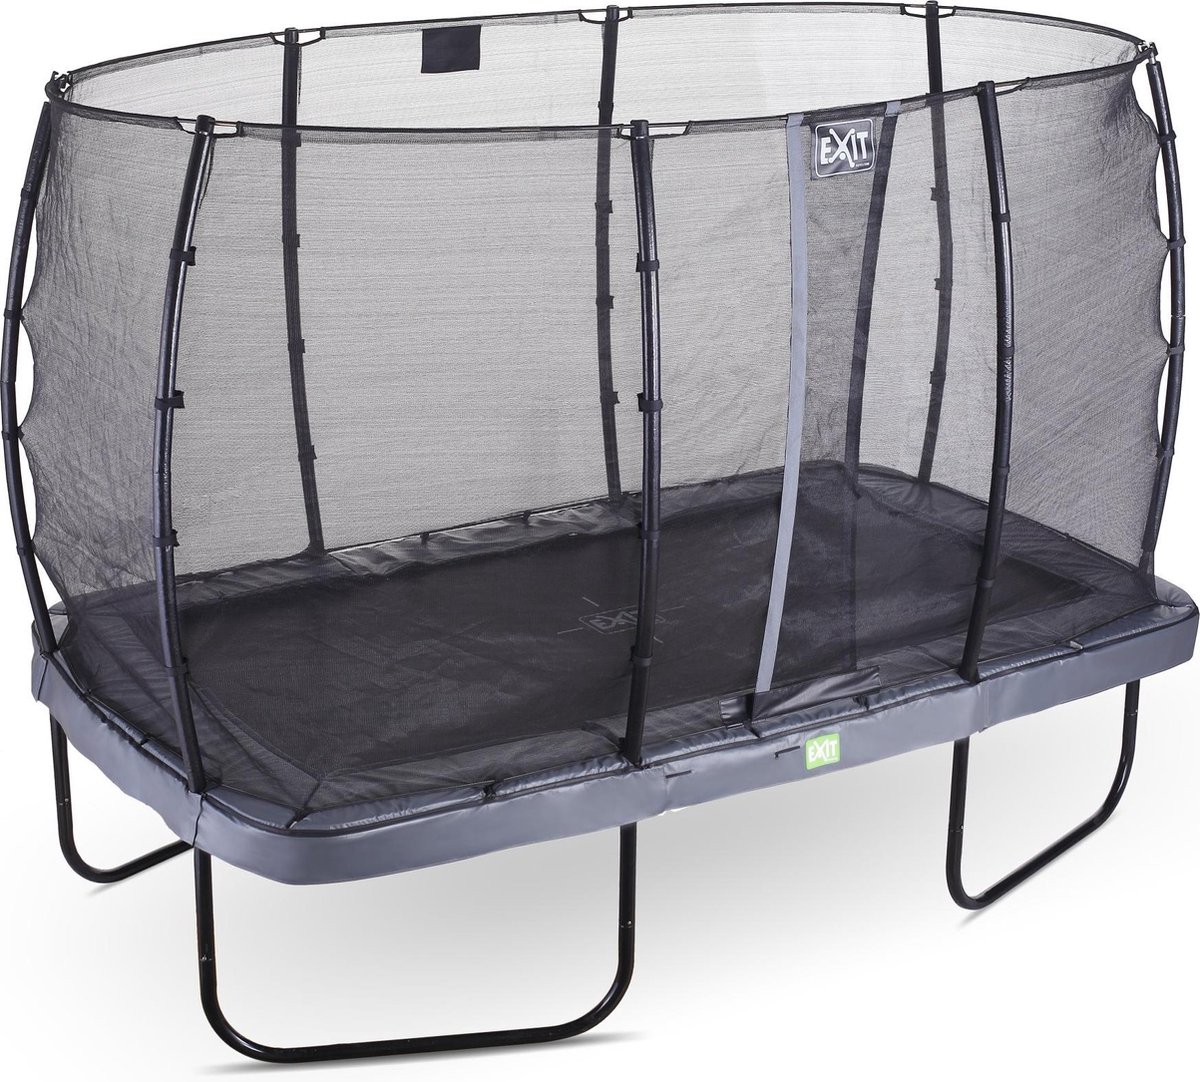 EXIT Elegant trampoline 244x427cm met Economy veiligheidsnet - grijs